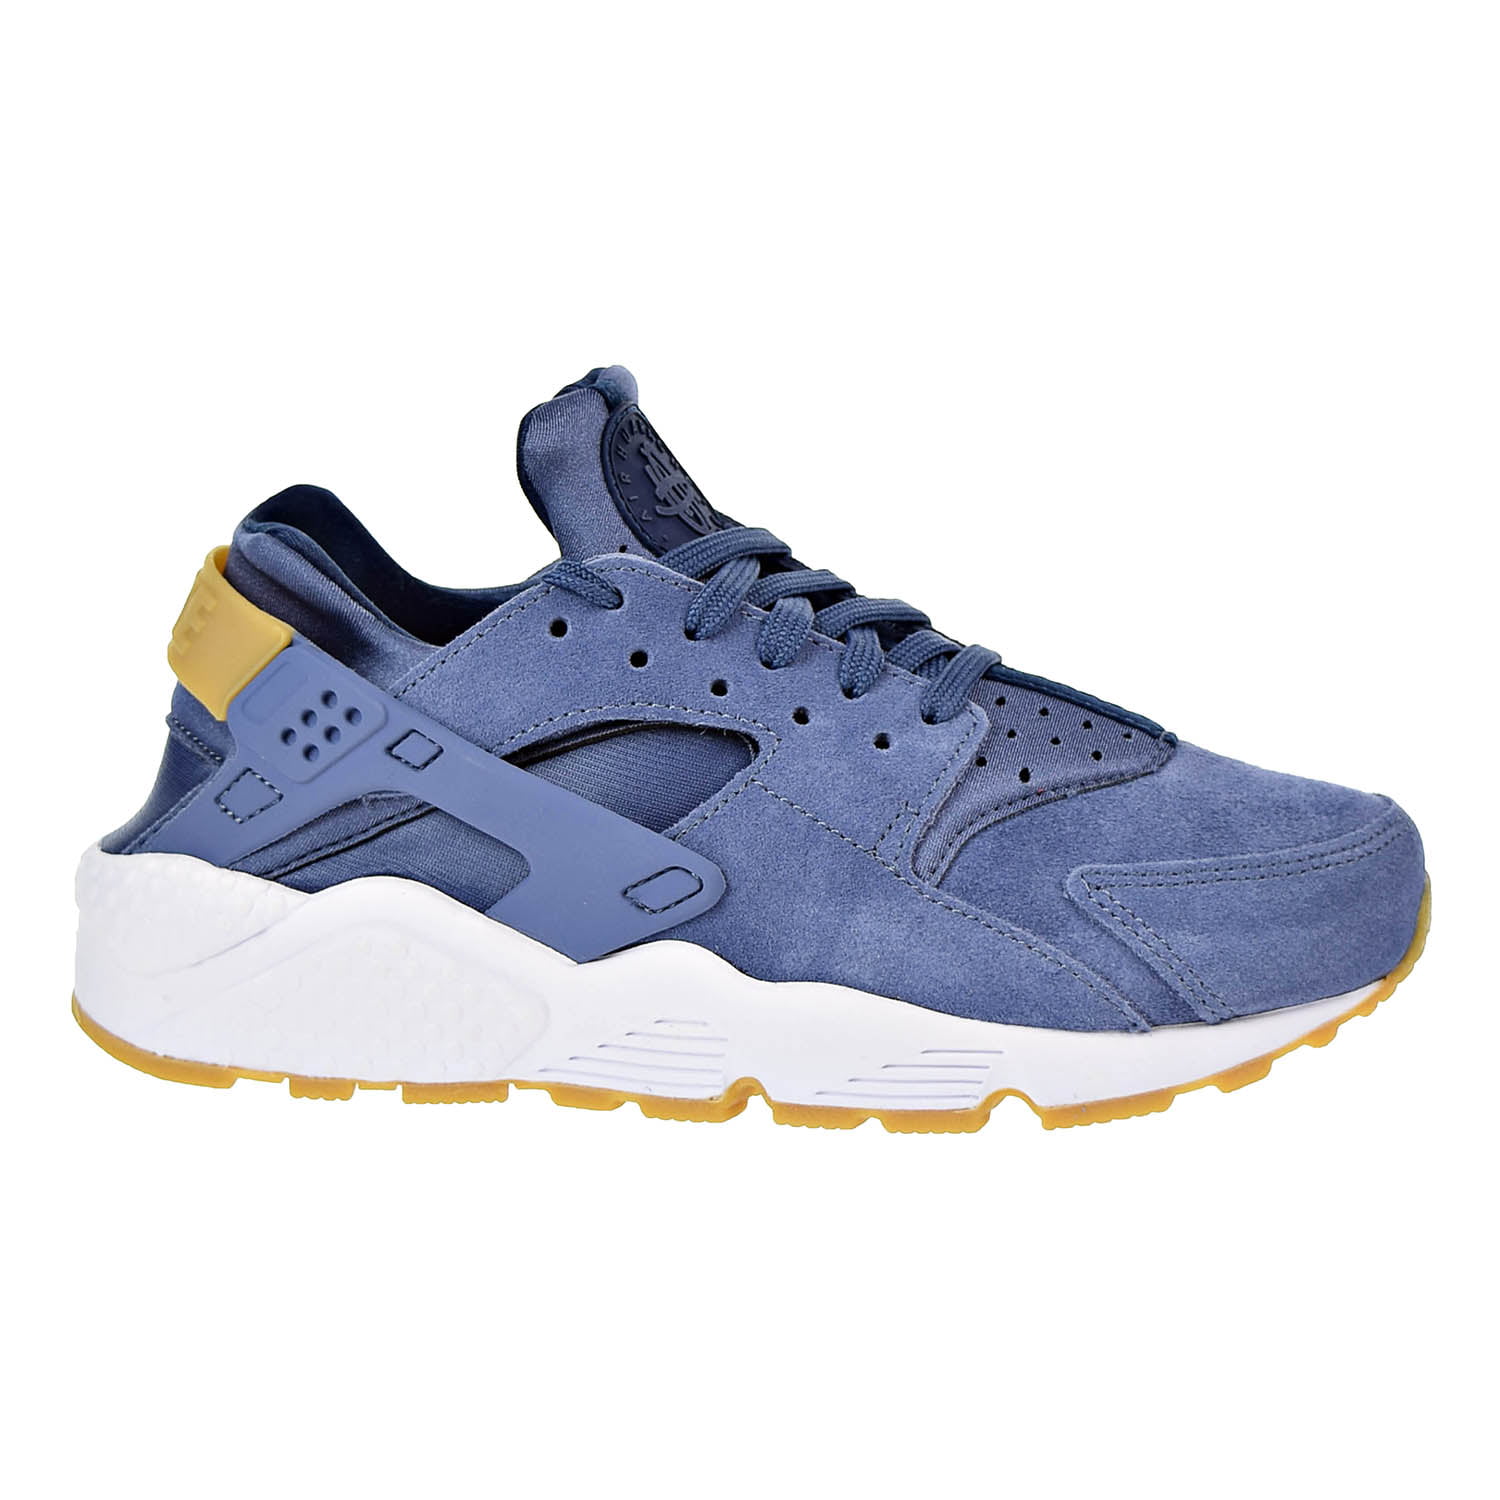 Nike Air Huarache Run Suede Womens Shoes Diffused Blue aa0524-400 (9 B(M)  US) - Walmart.com